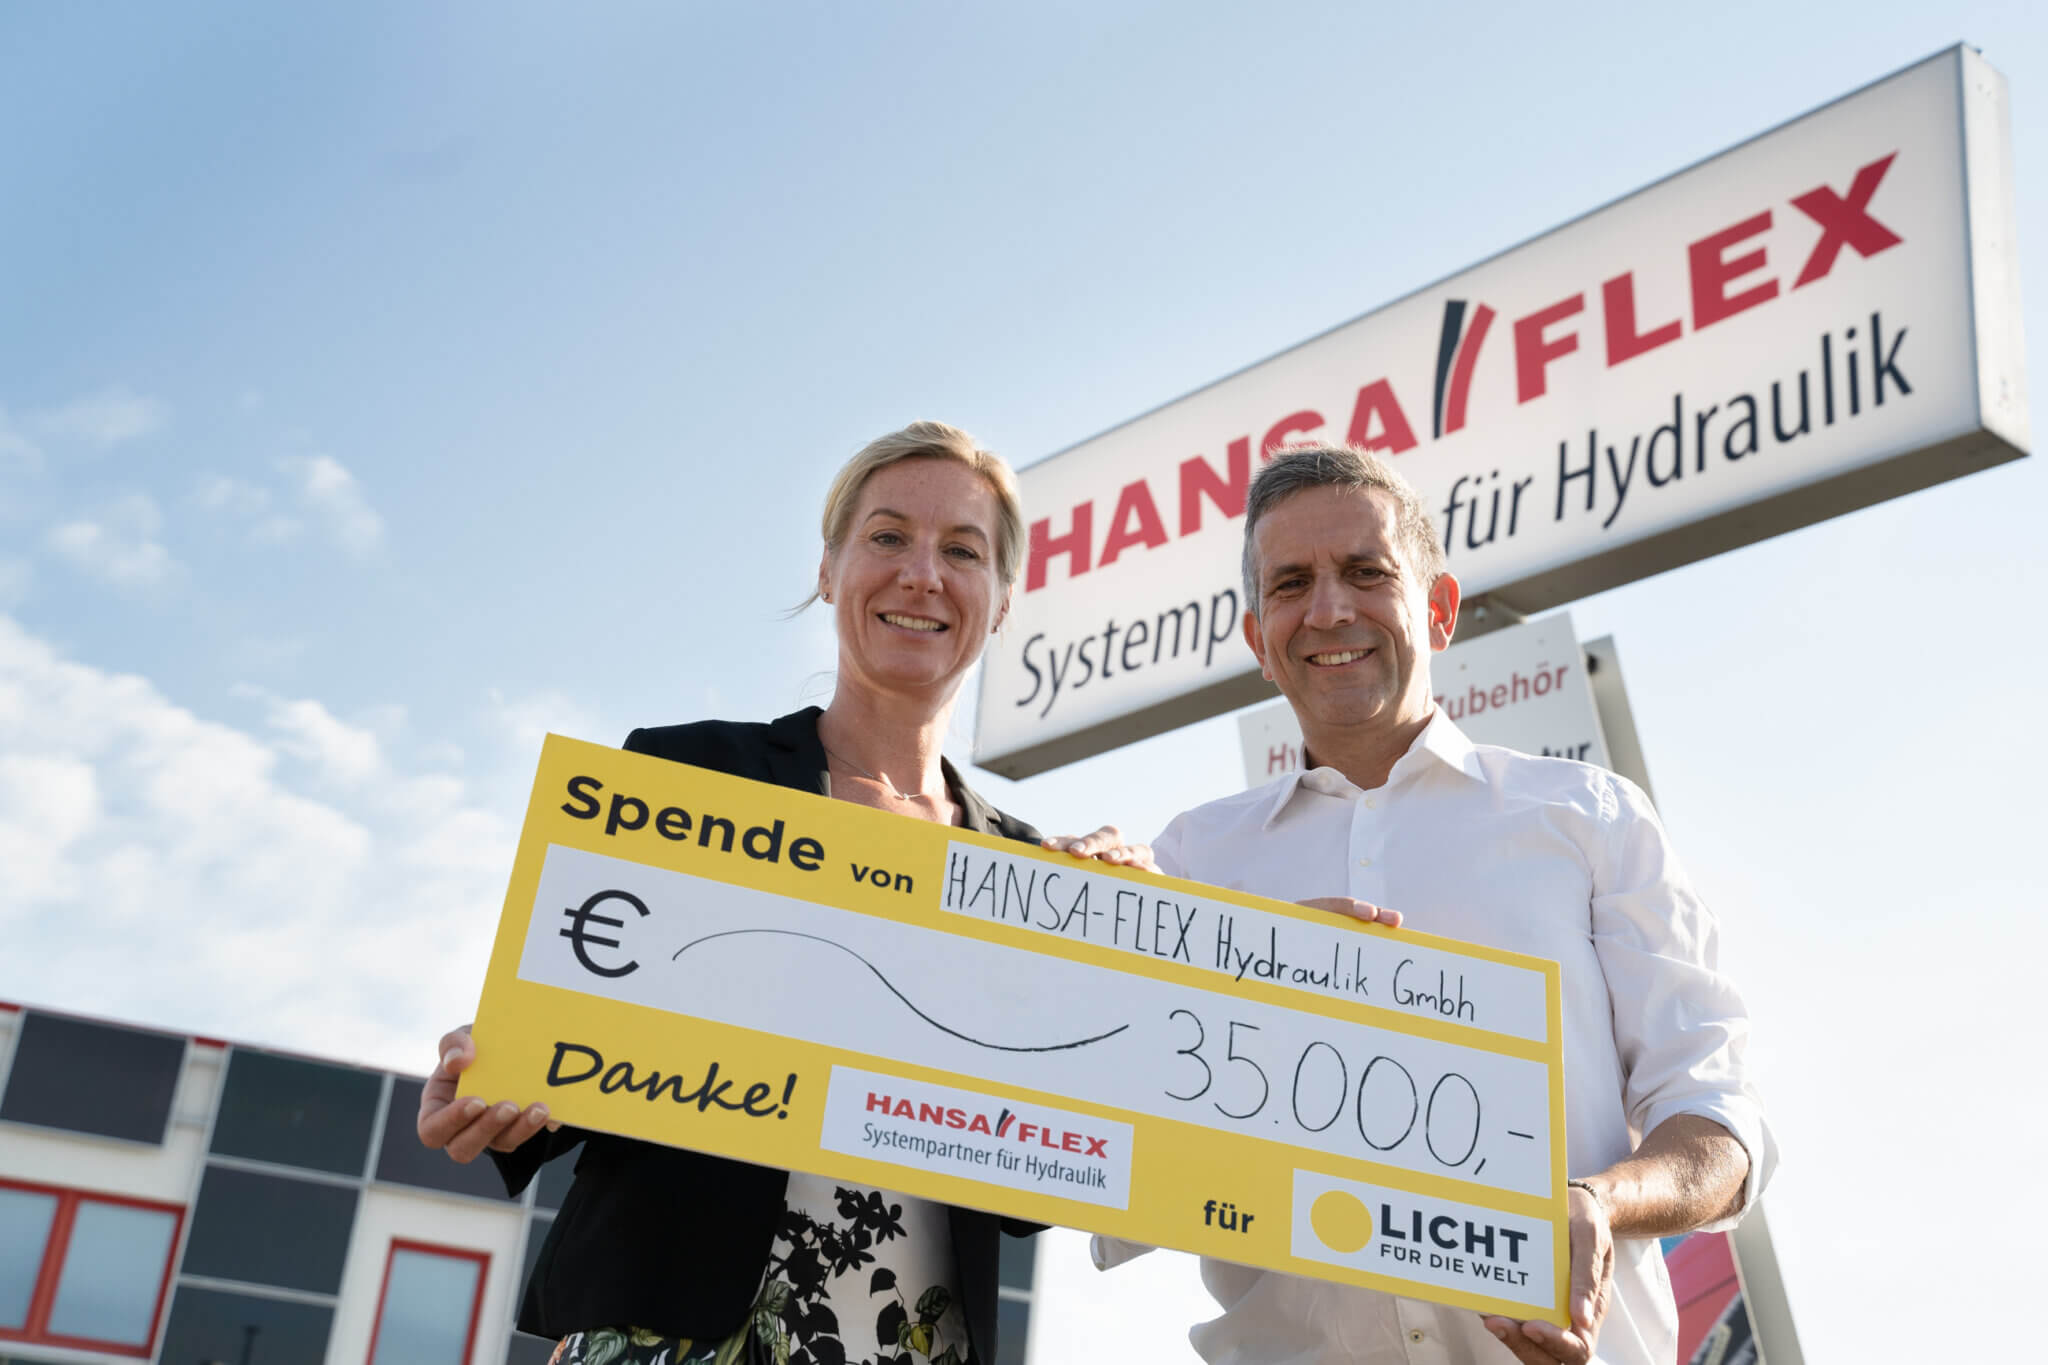 Seit 2013 unterstützt Hansaflex Licht für die Welt. 2019 hat das Unternehmen Menschen in Äthiopien mit 35.000€ unterstützt.